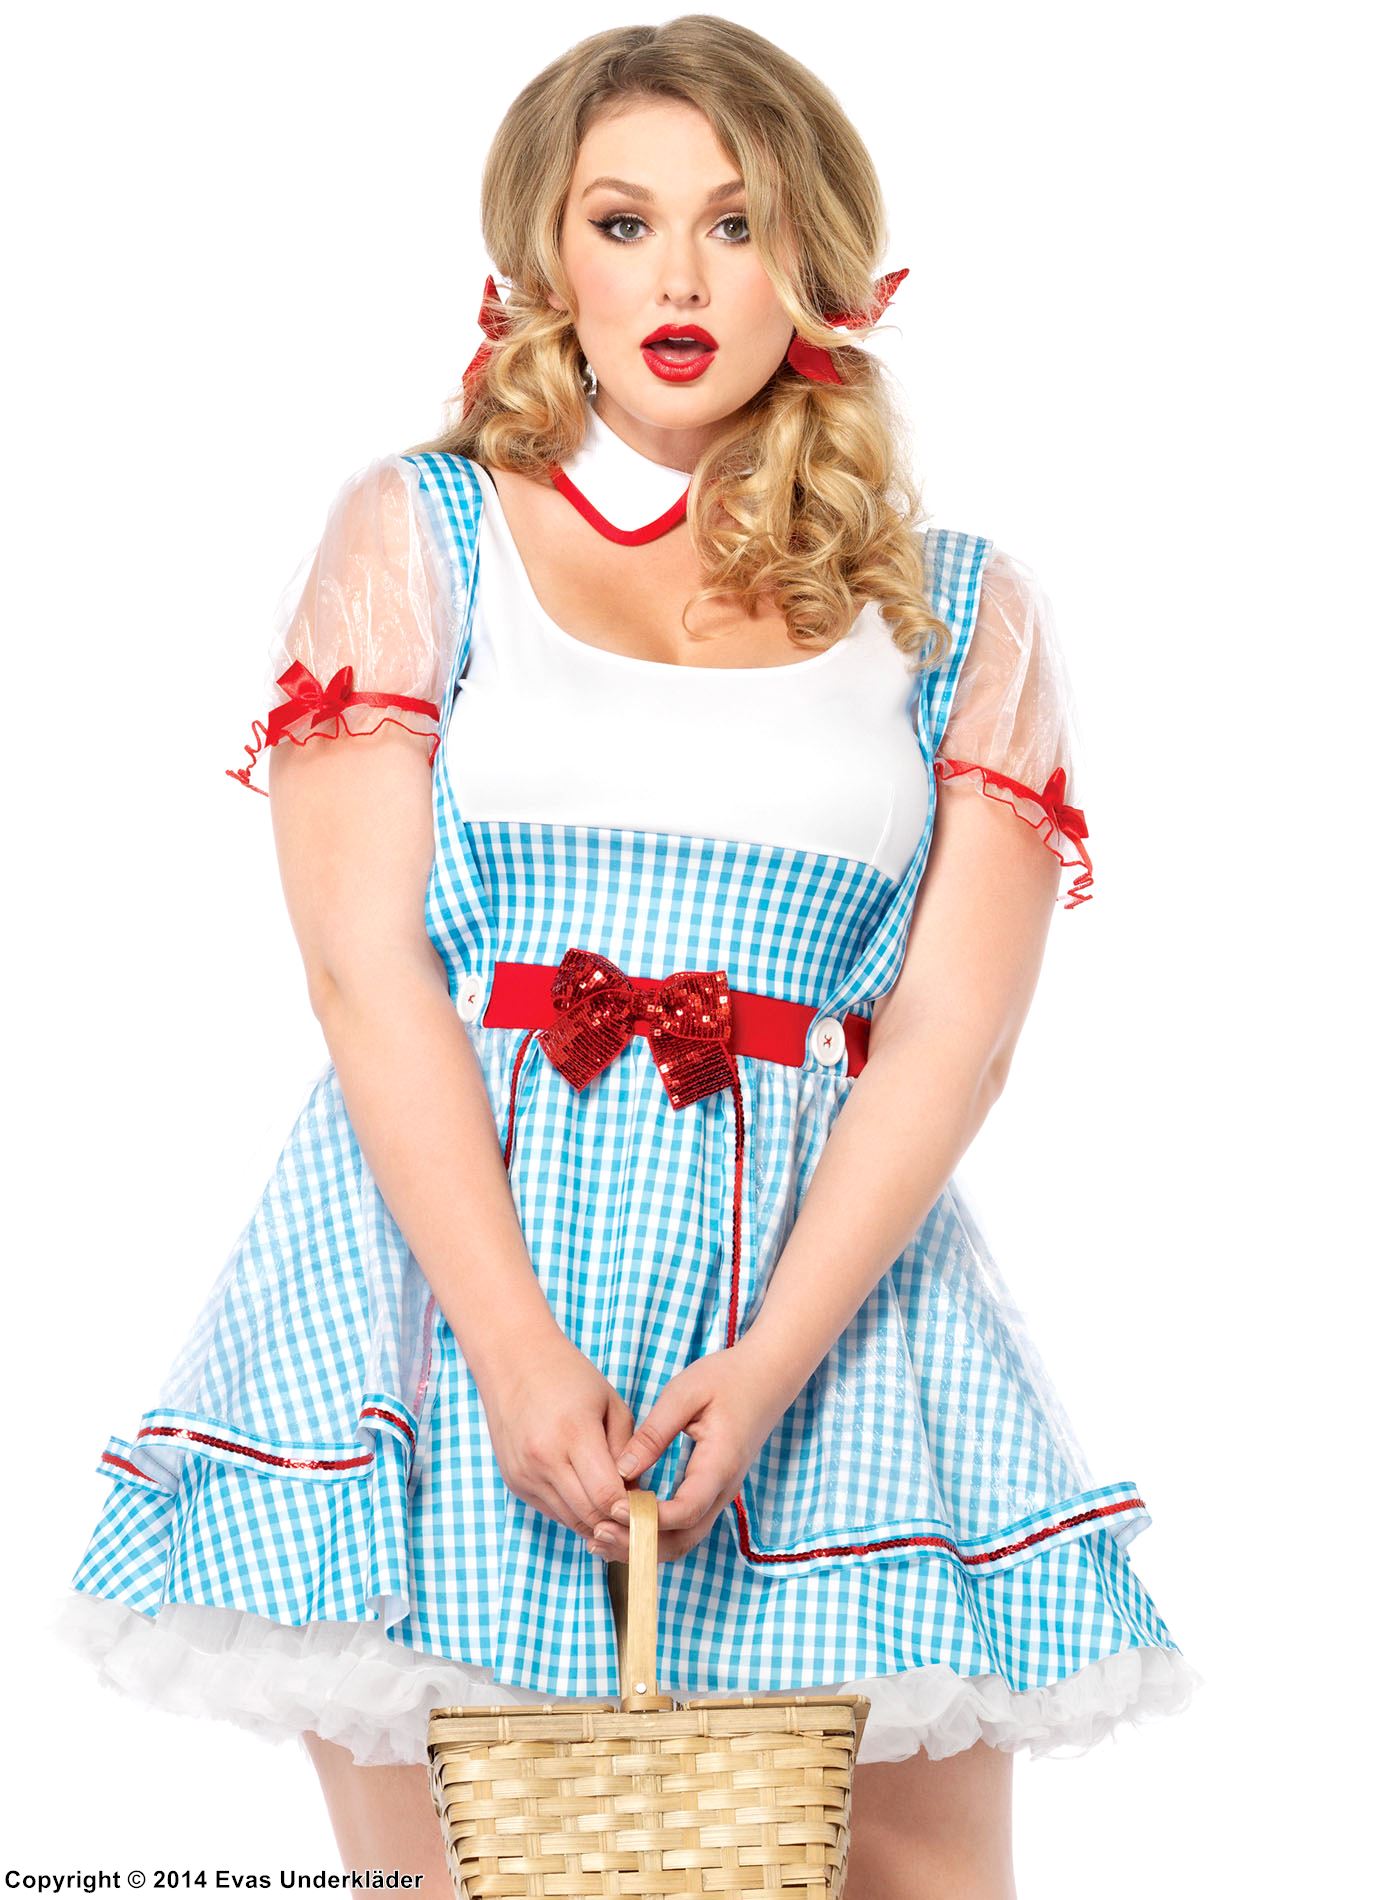 Dorothy aus dem Zauberer von Oz, Kostüm-Kleid, Pailletten, Hosenträger, Schachbrettmuster, XL bis 4XL